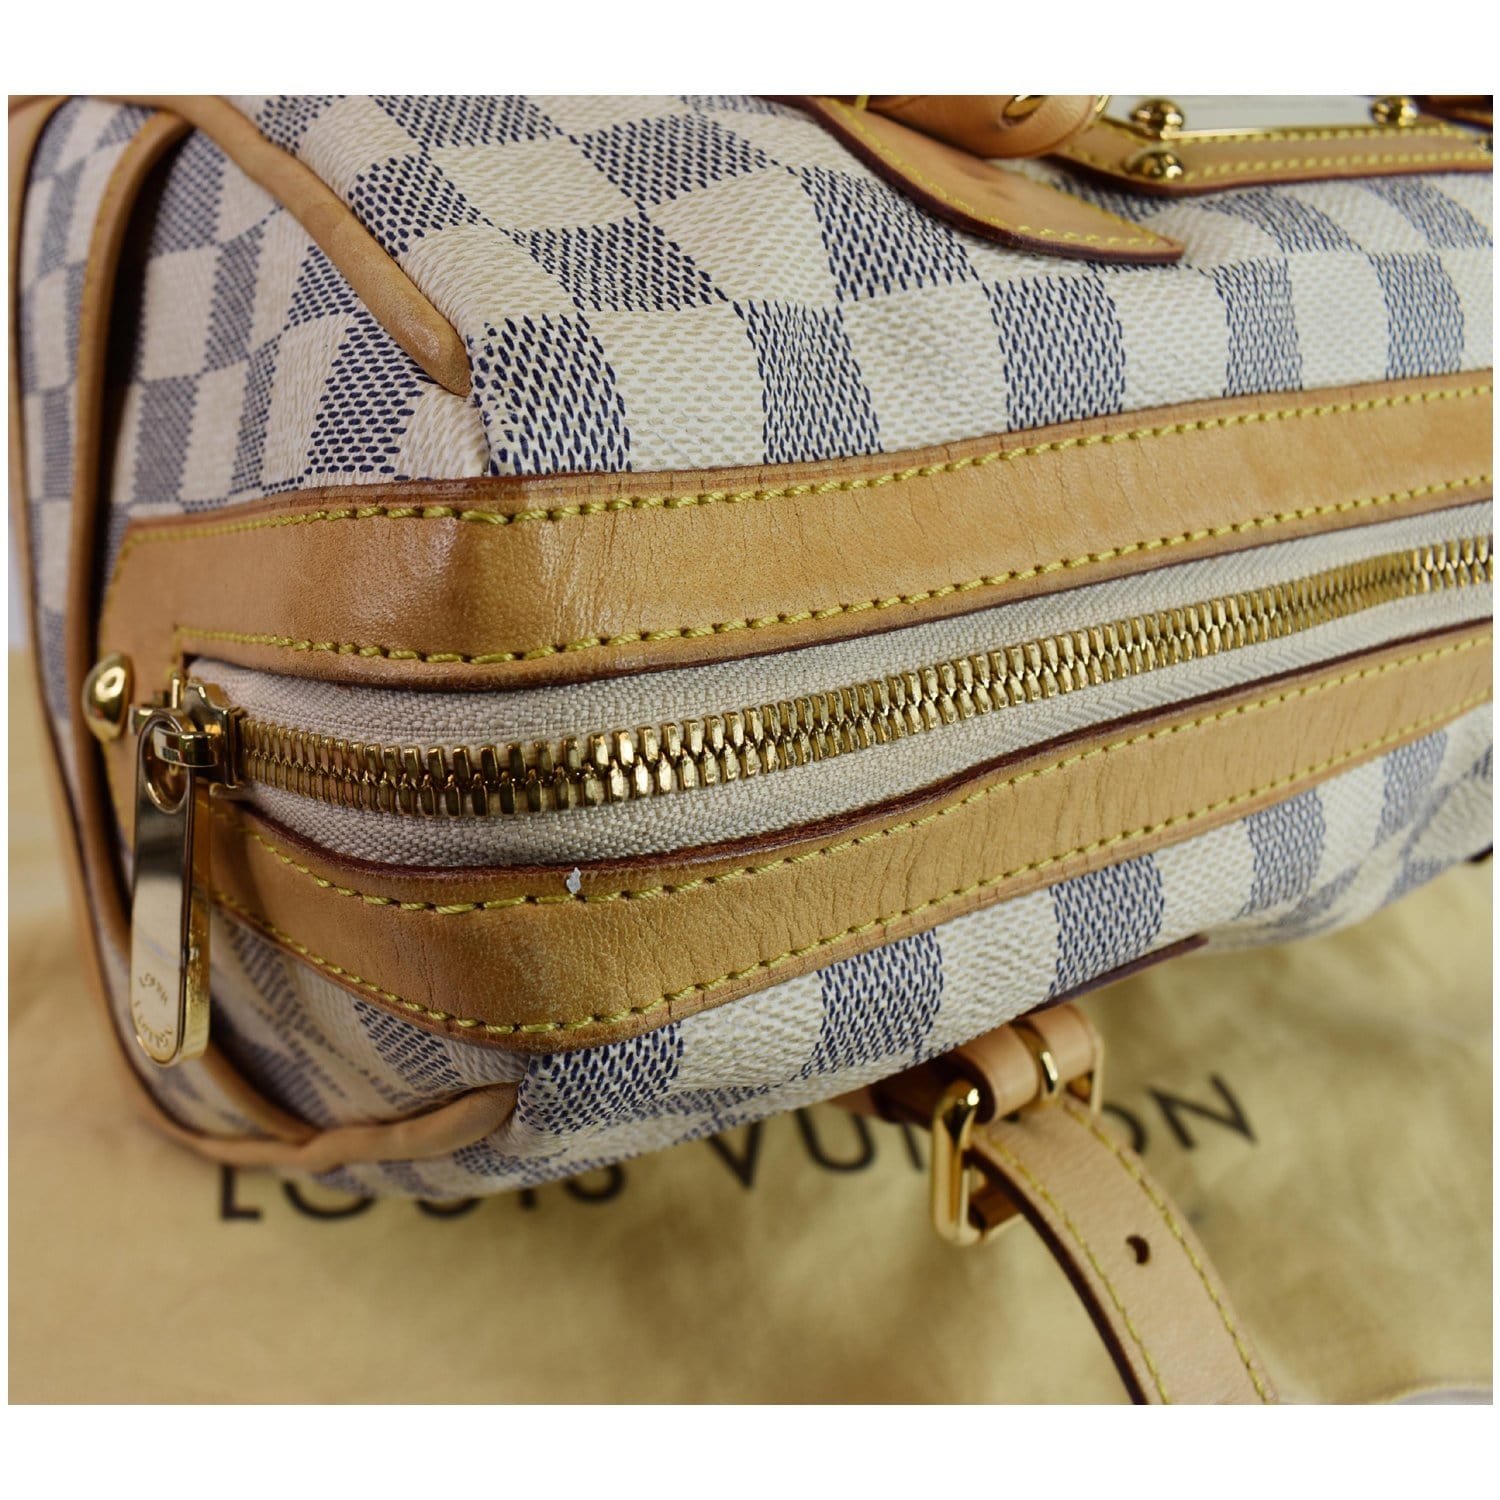 ขายแล้วค่ะ Louis Vuitton Damier Broadway Vintage Bag สภาพใหม่กริ๊ป